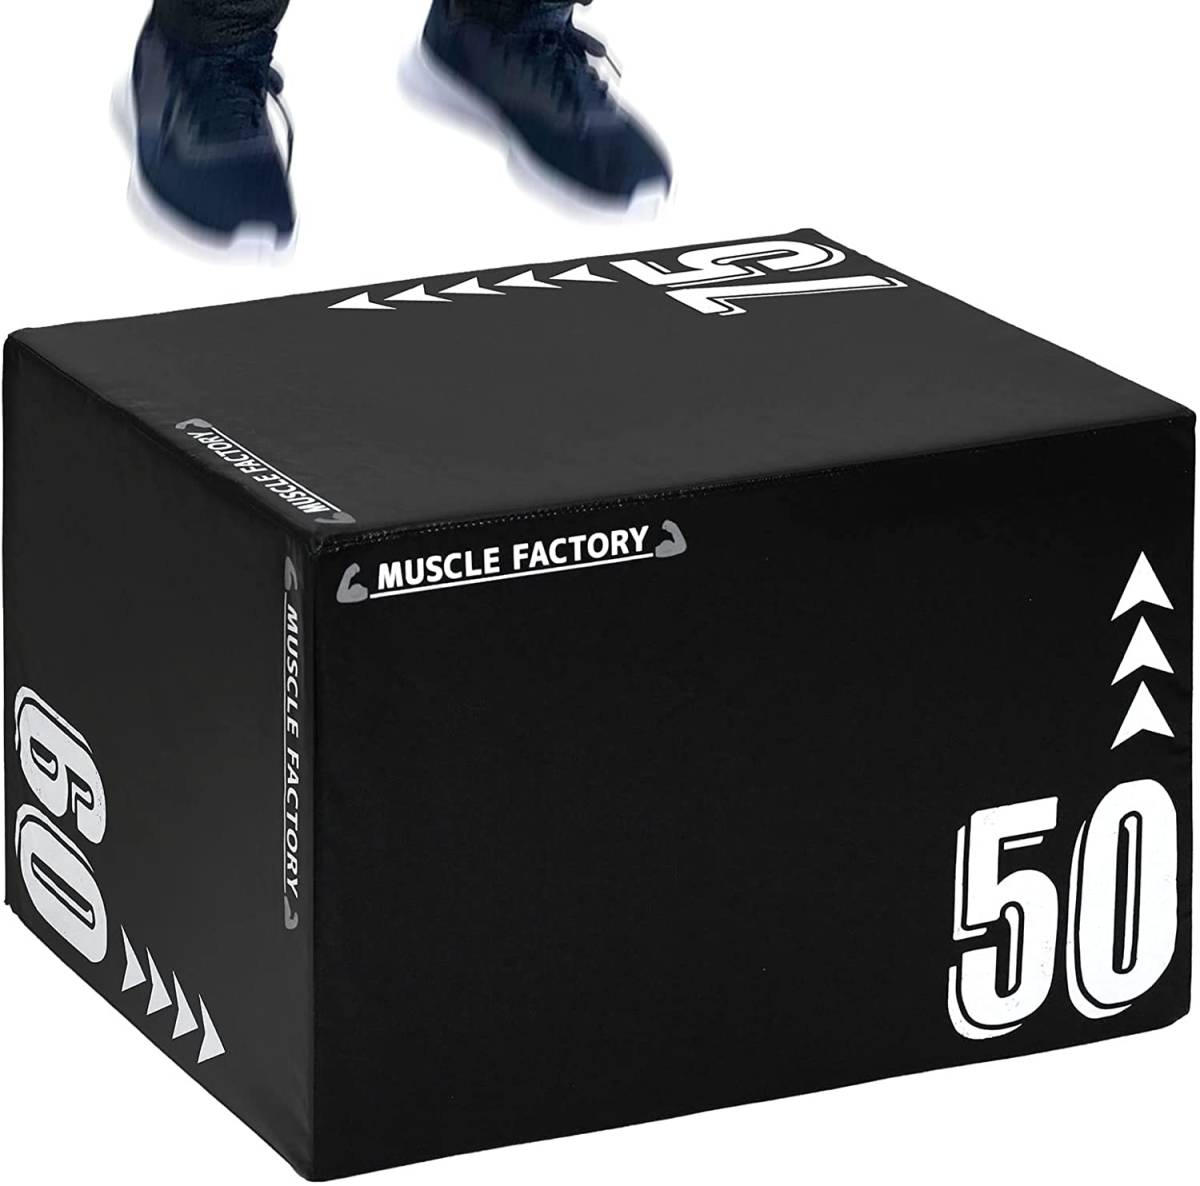 MUSCLE FACTORY プライオボックス ソフト 50×60×75cm プライオメトリクス ボックス 昇降台 ジャンプ台 ステップ台 跳び箱  3in1